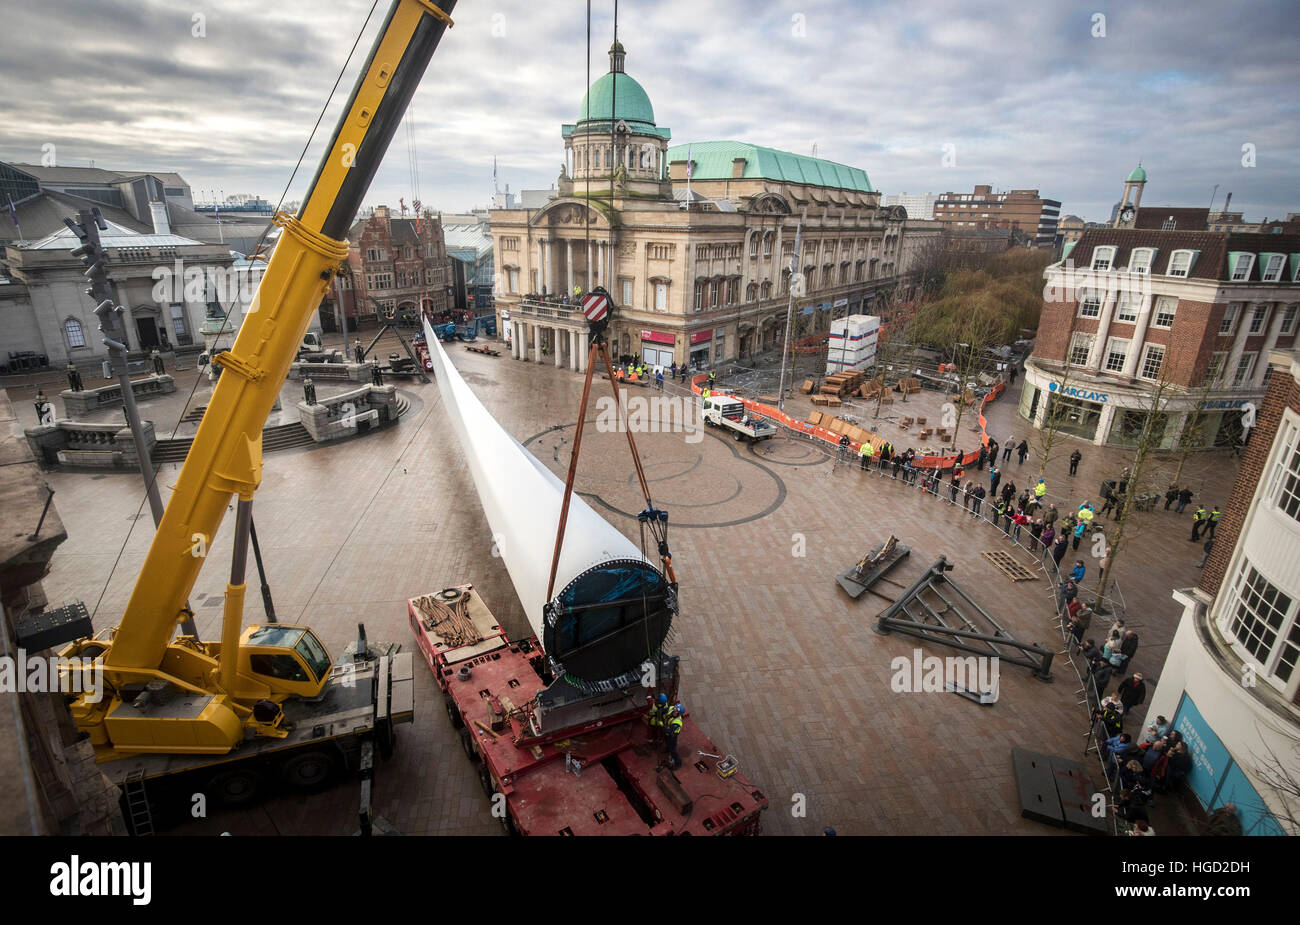 Kunstwerk Klinge, eine 250ft-lange (75m) Windturbine, von Multimediakünstler Nayan Kulkarni in Auftrag gegeben und von Arbeitern im Siemens-Werk in Hull, erstellt am Queen Victoria Square im Rumpf installiert ist. Stockfoto